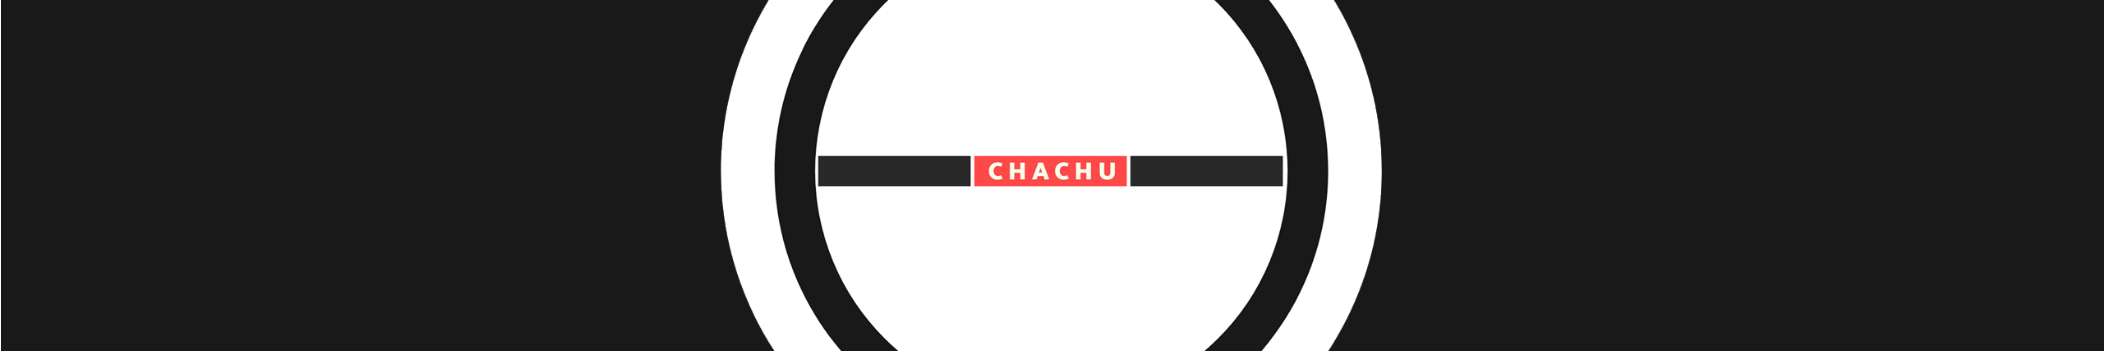 Chachu